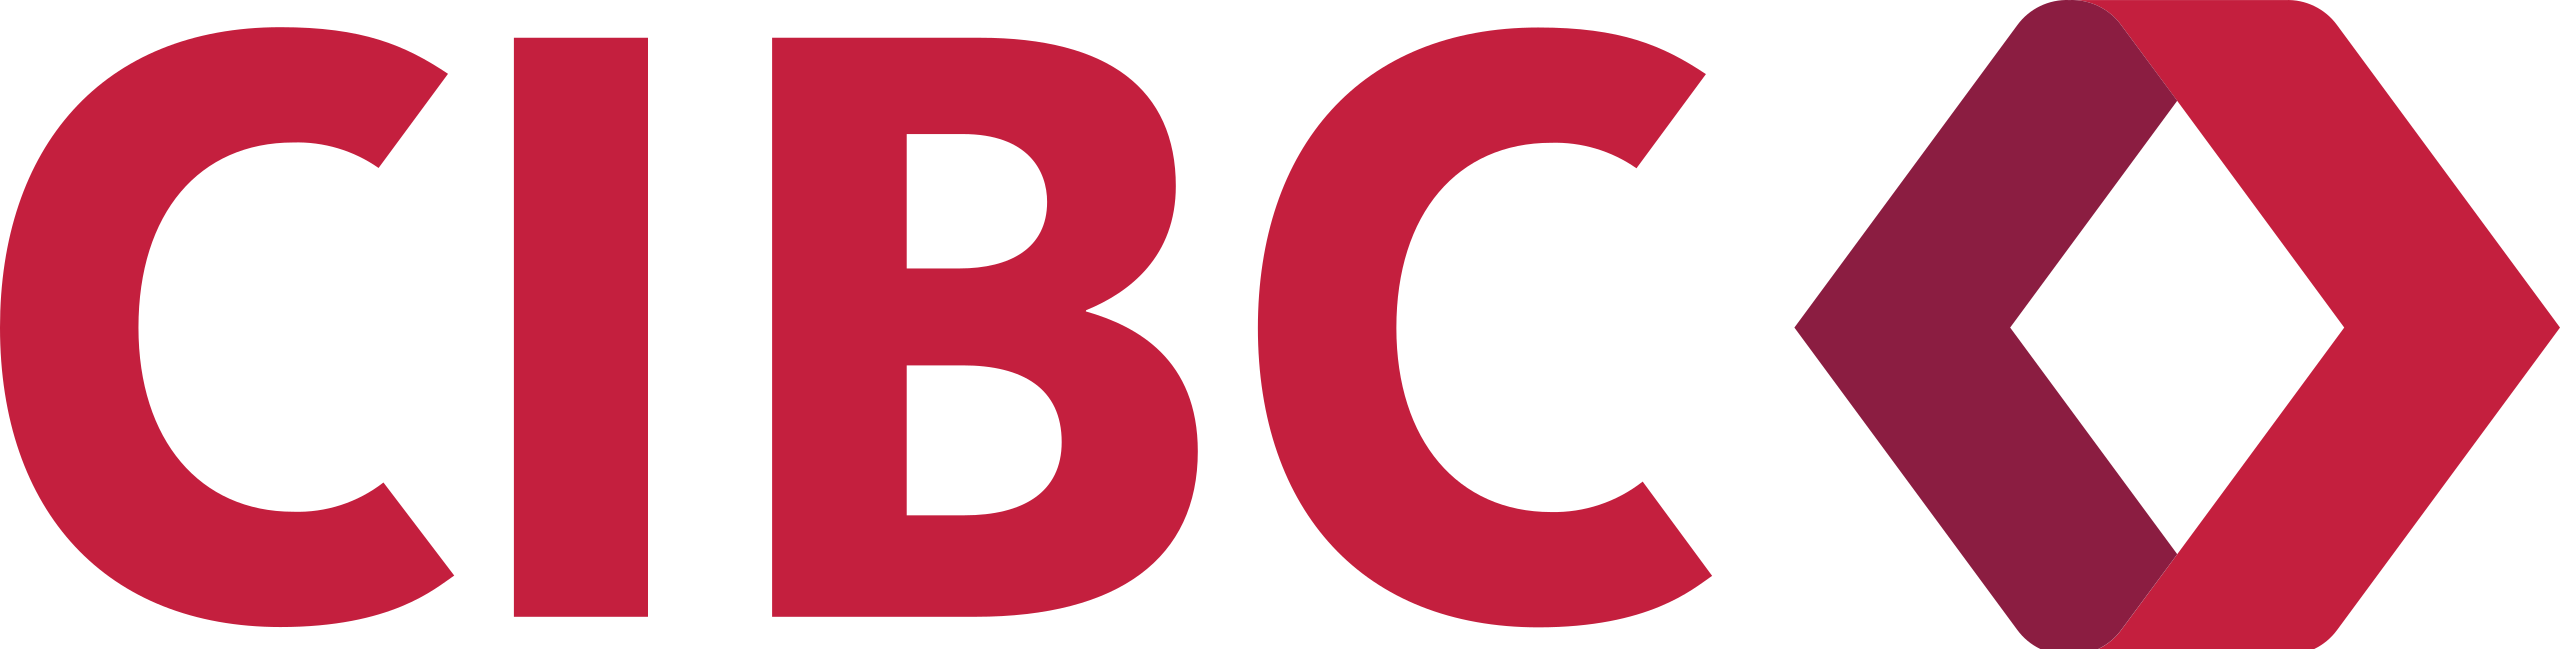 CIBC_logo_2021.svg.png